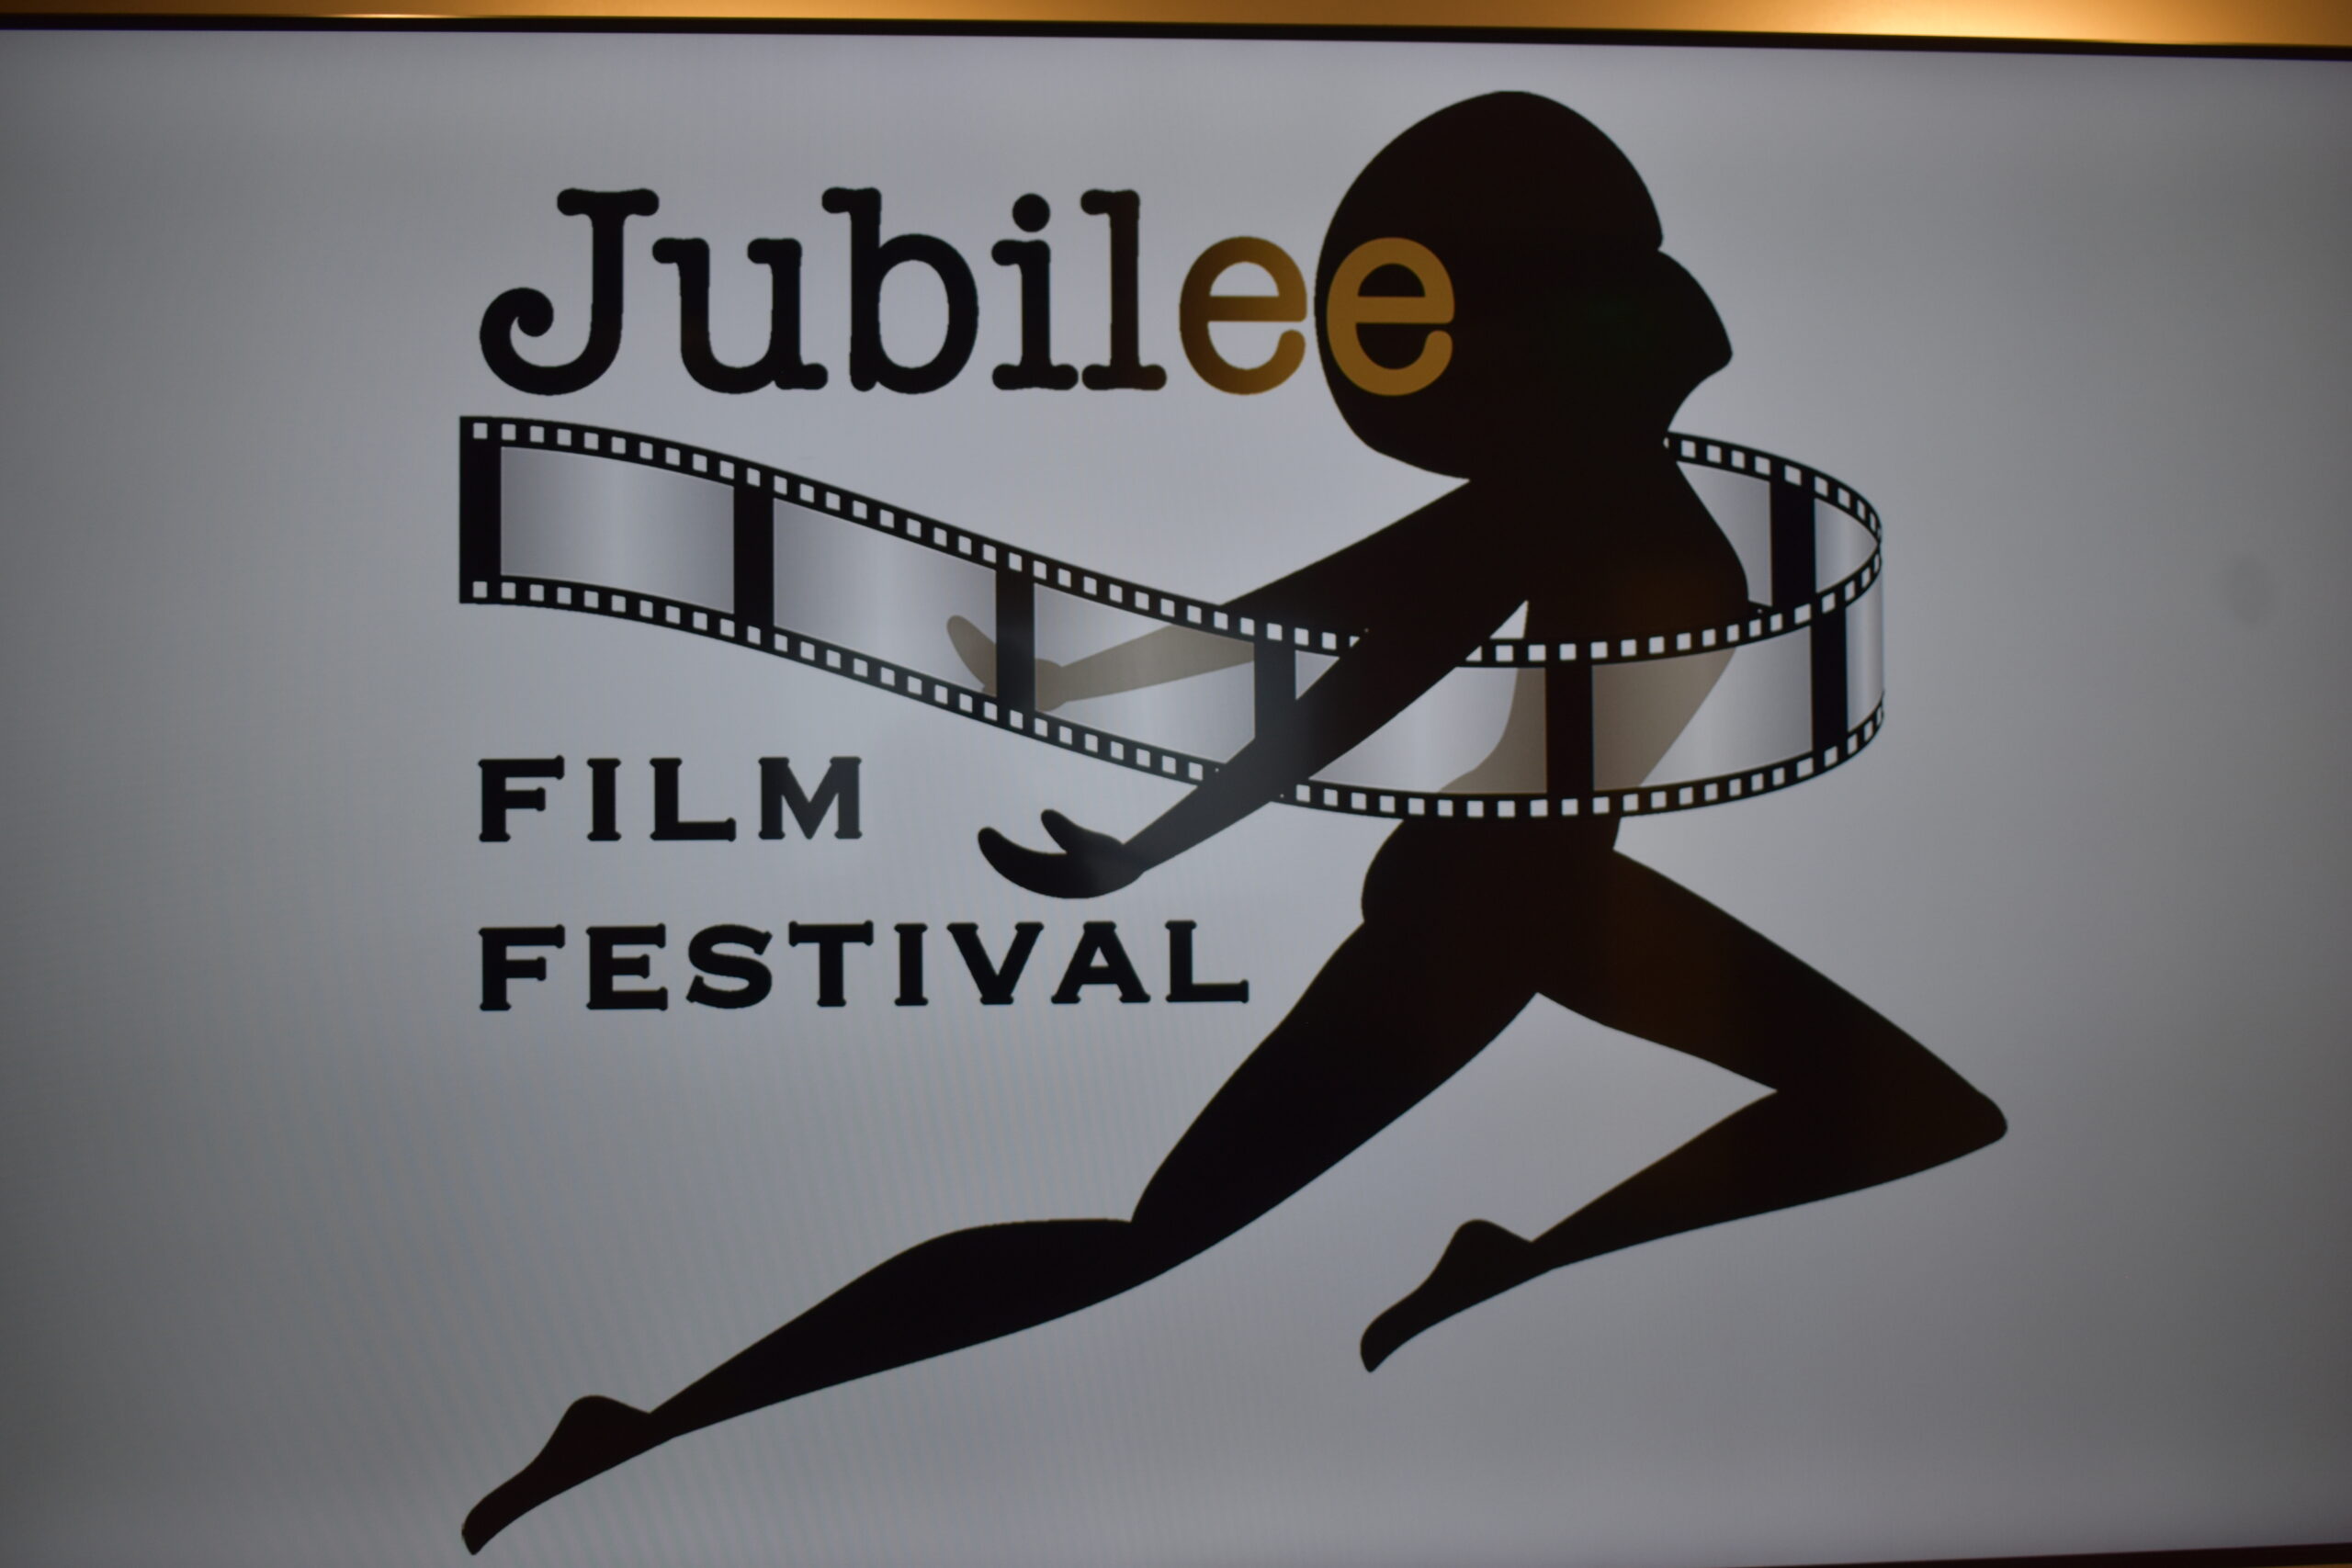 Jubilee Film Festival